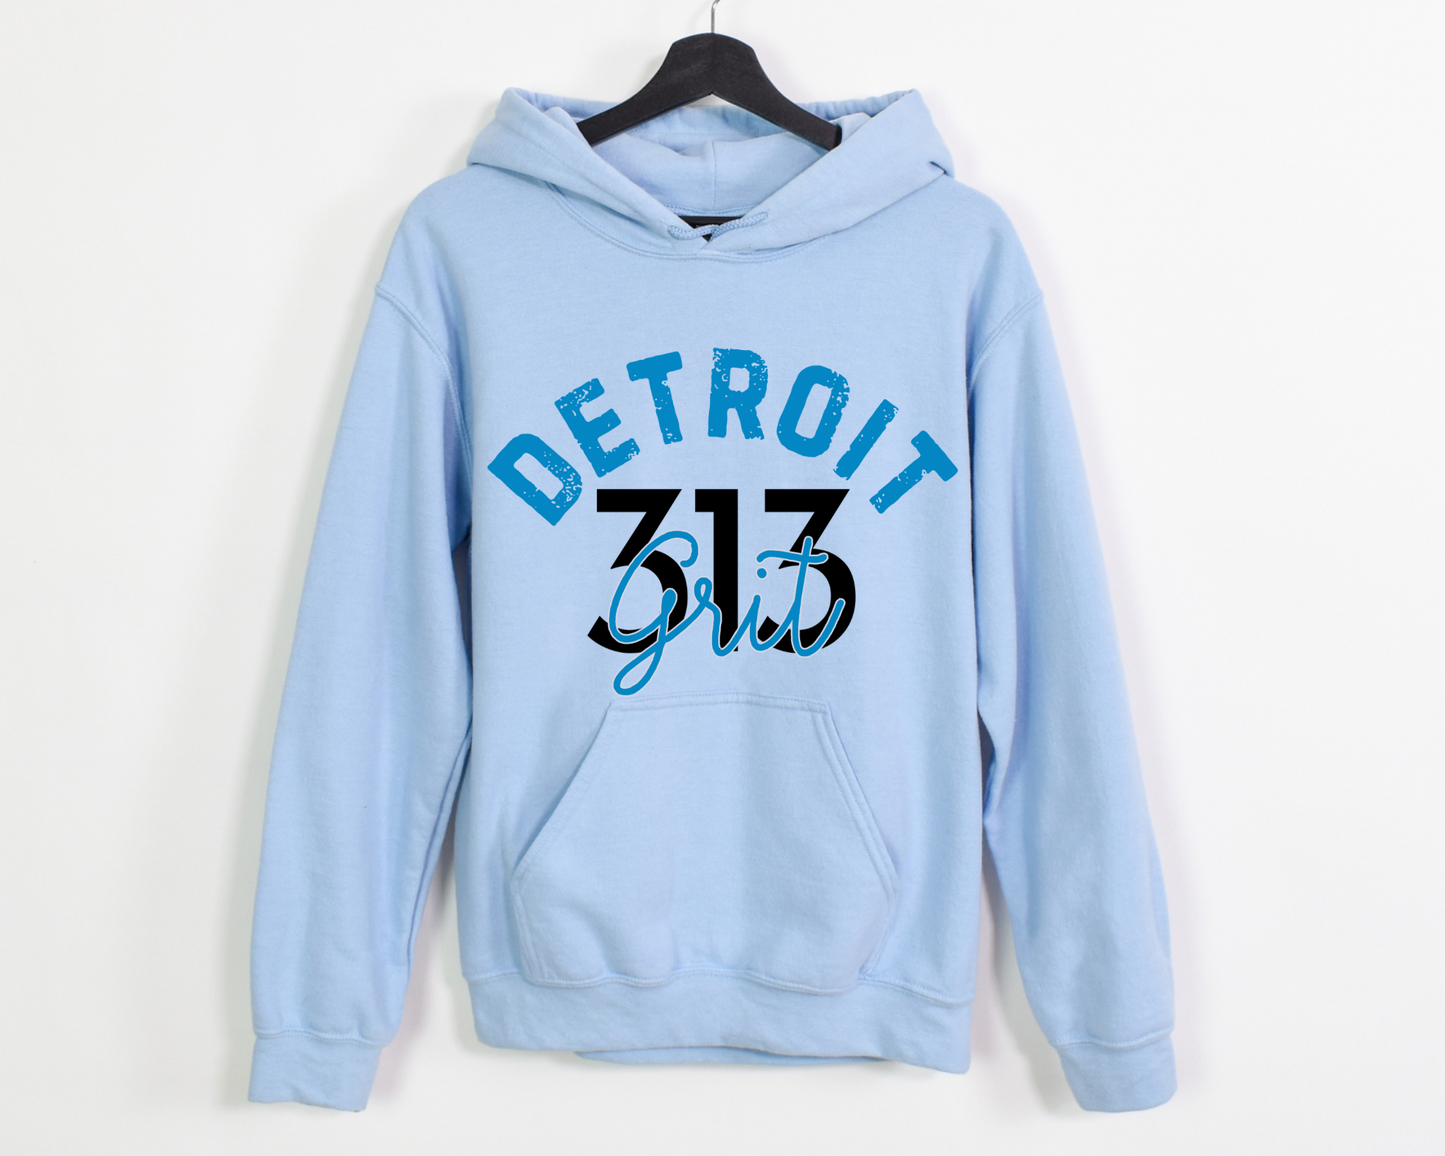 Detroit 313 Grit front/back